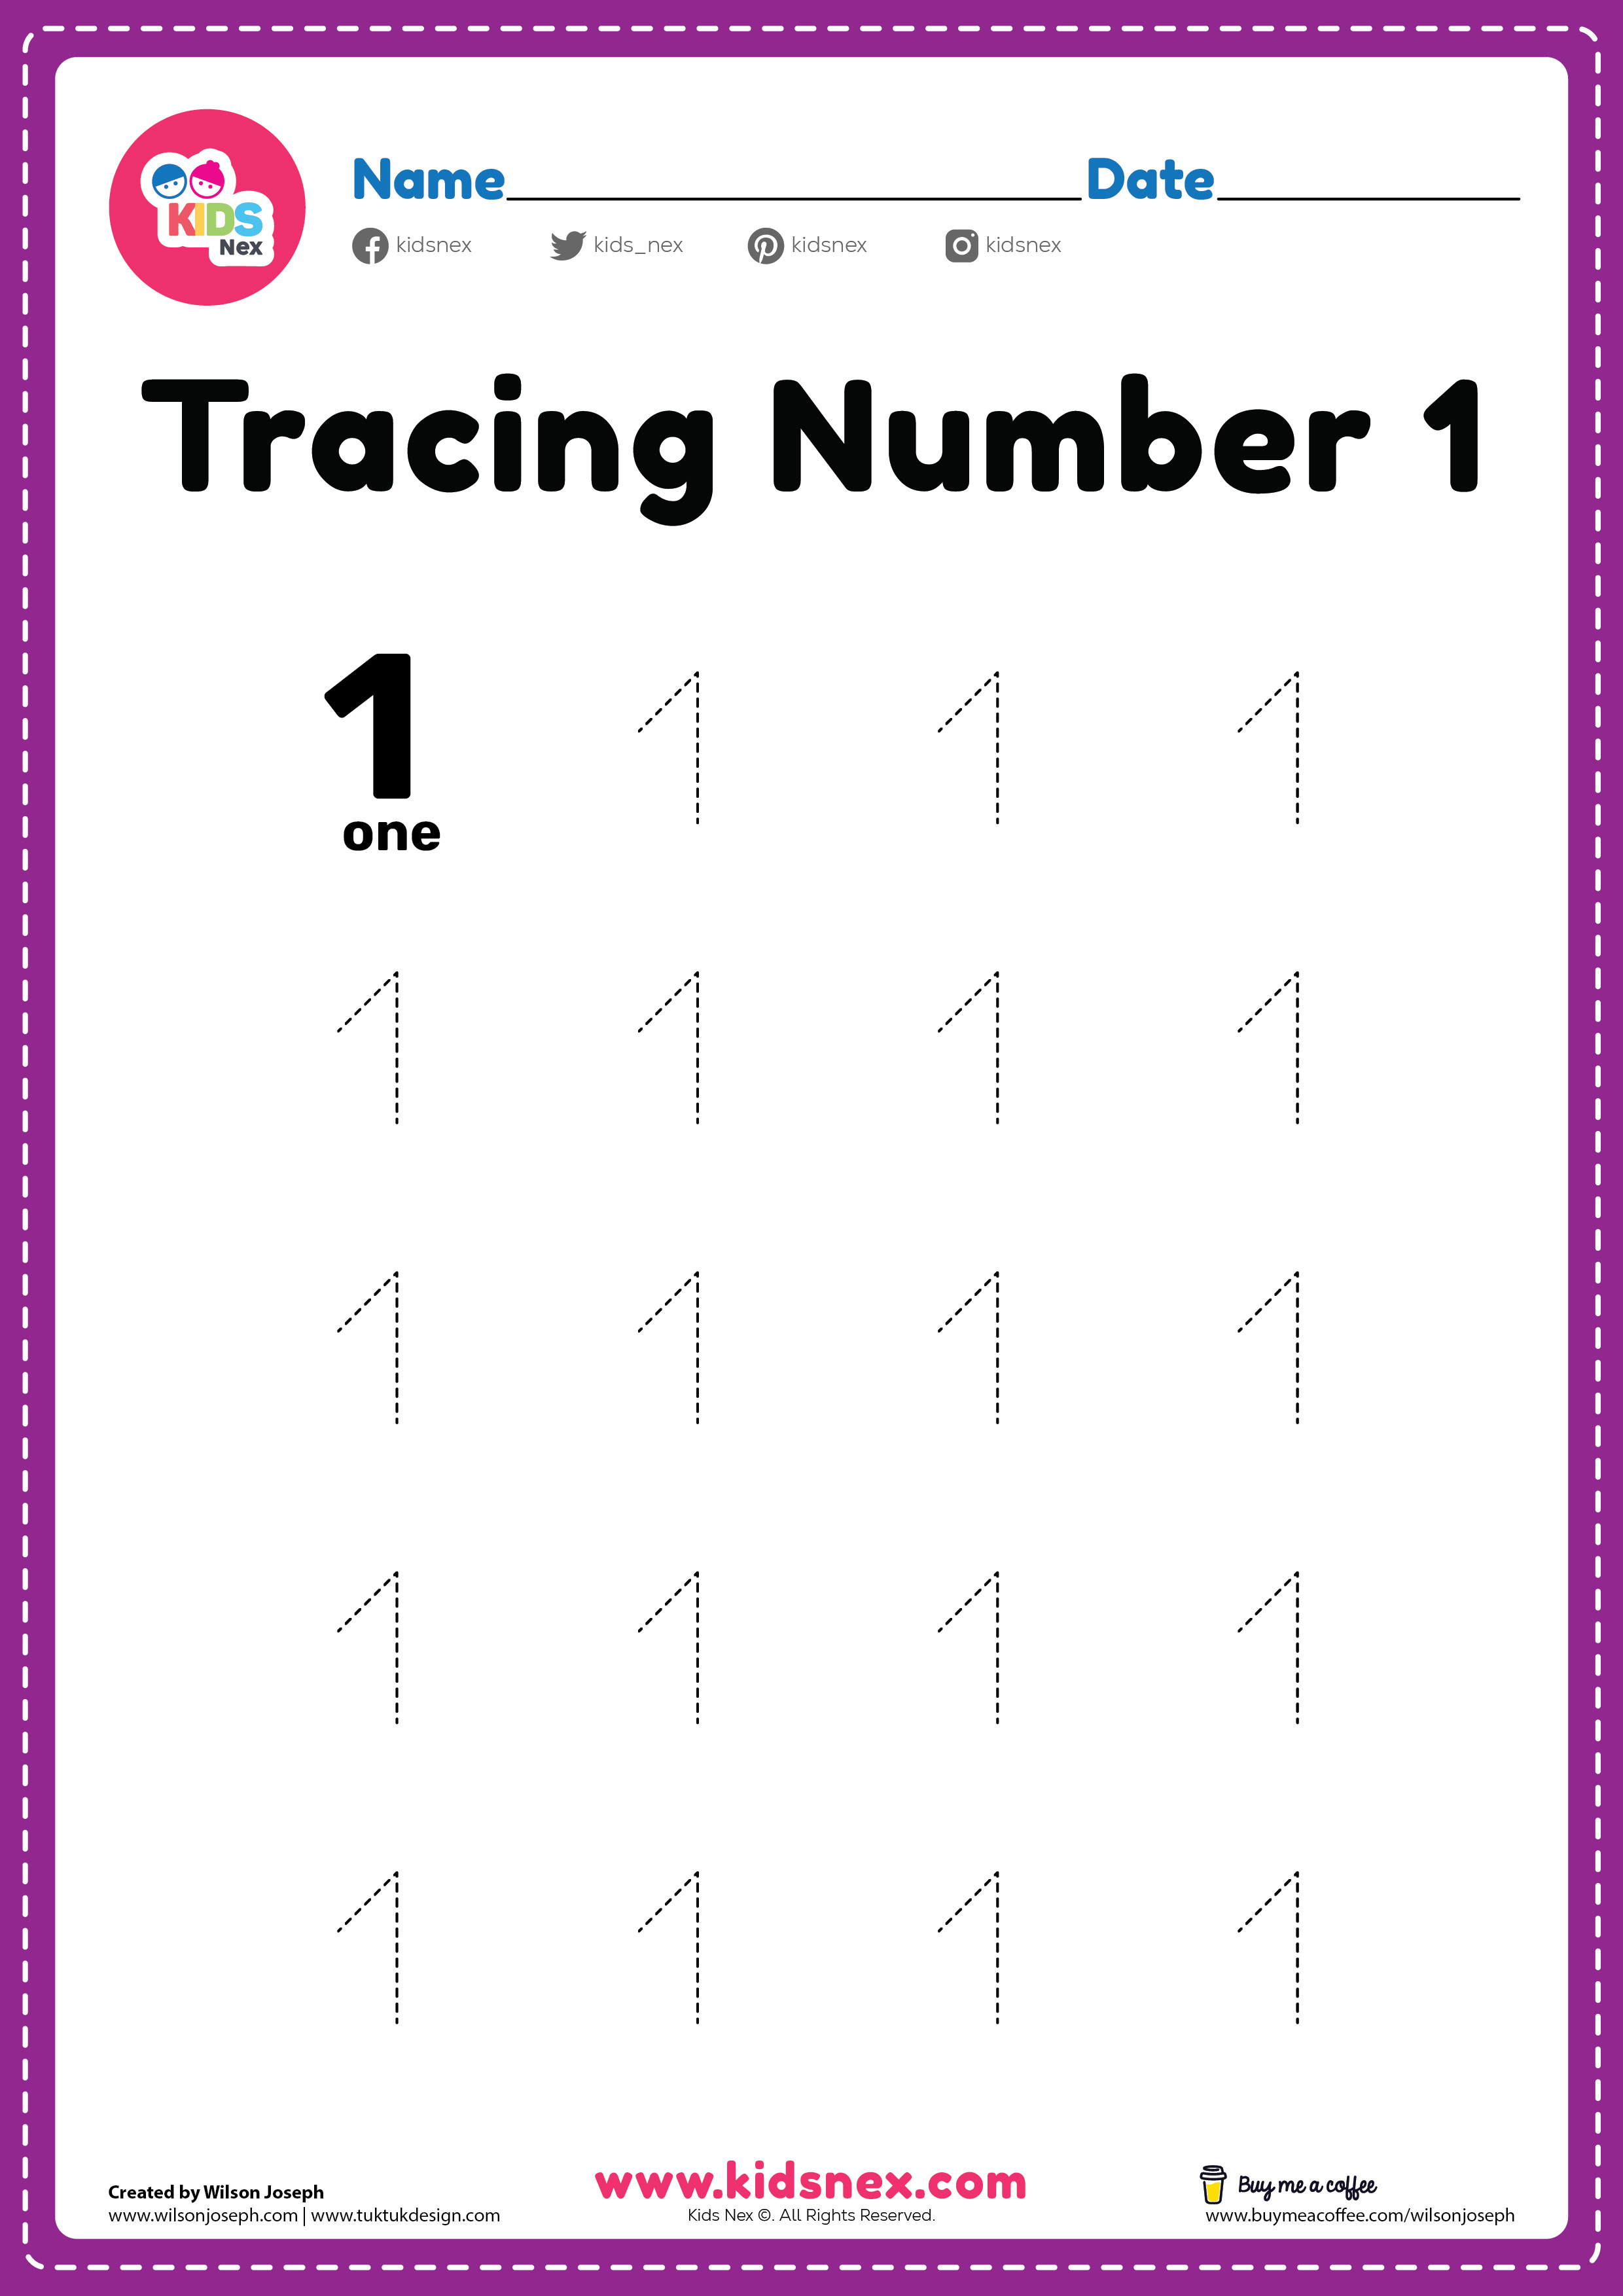 Preschool tracing number 1 worksheet